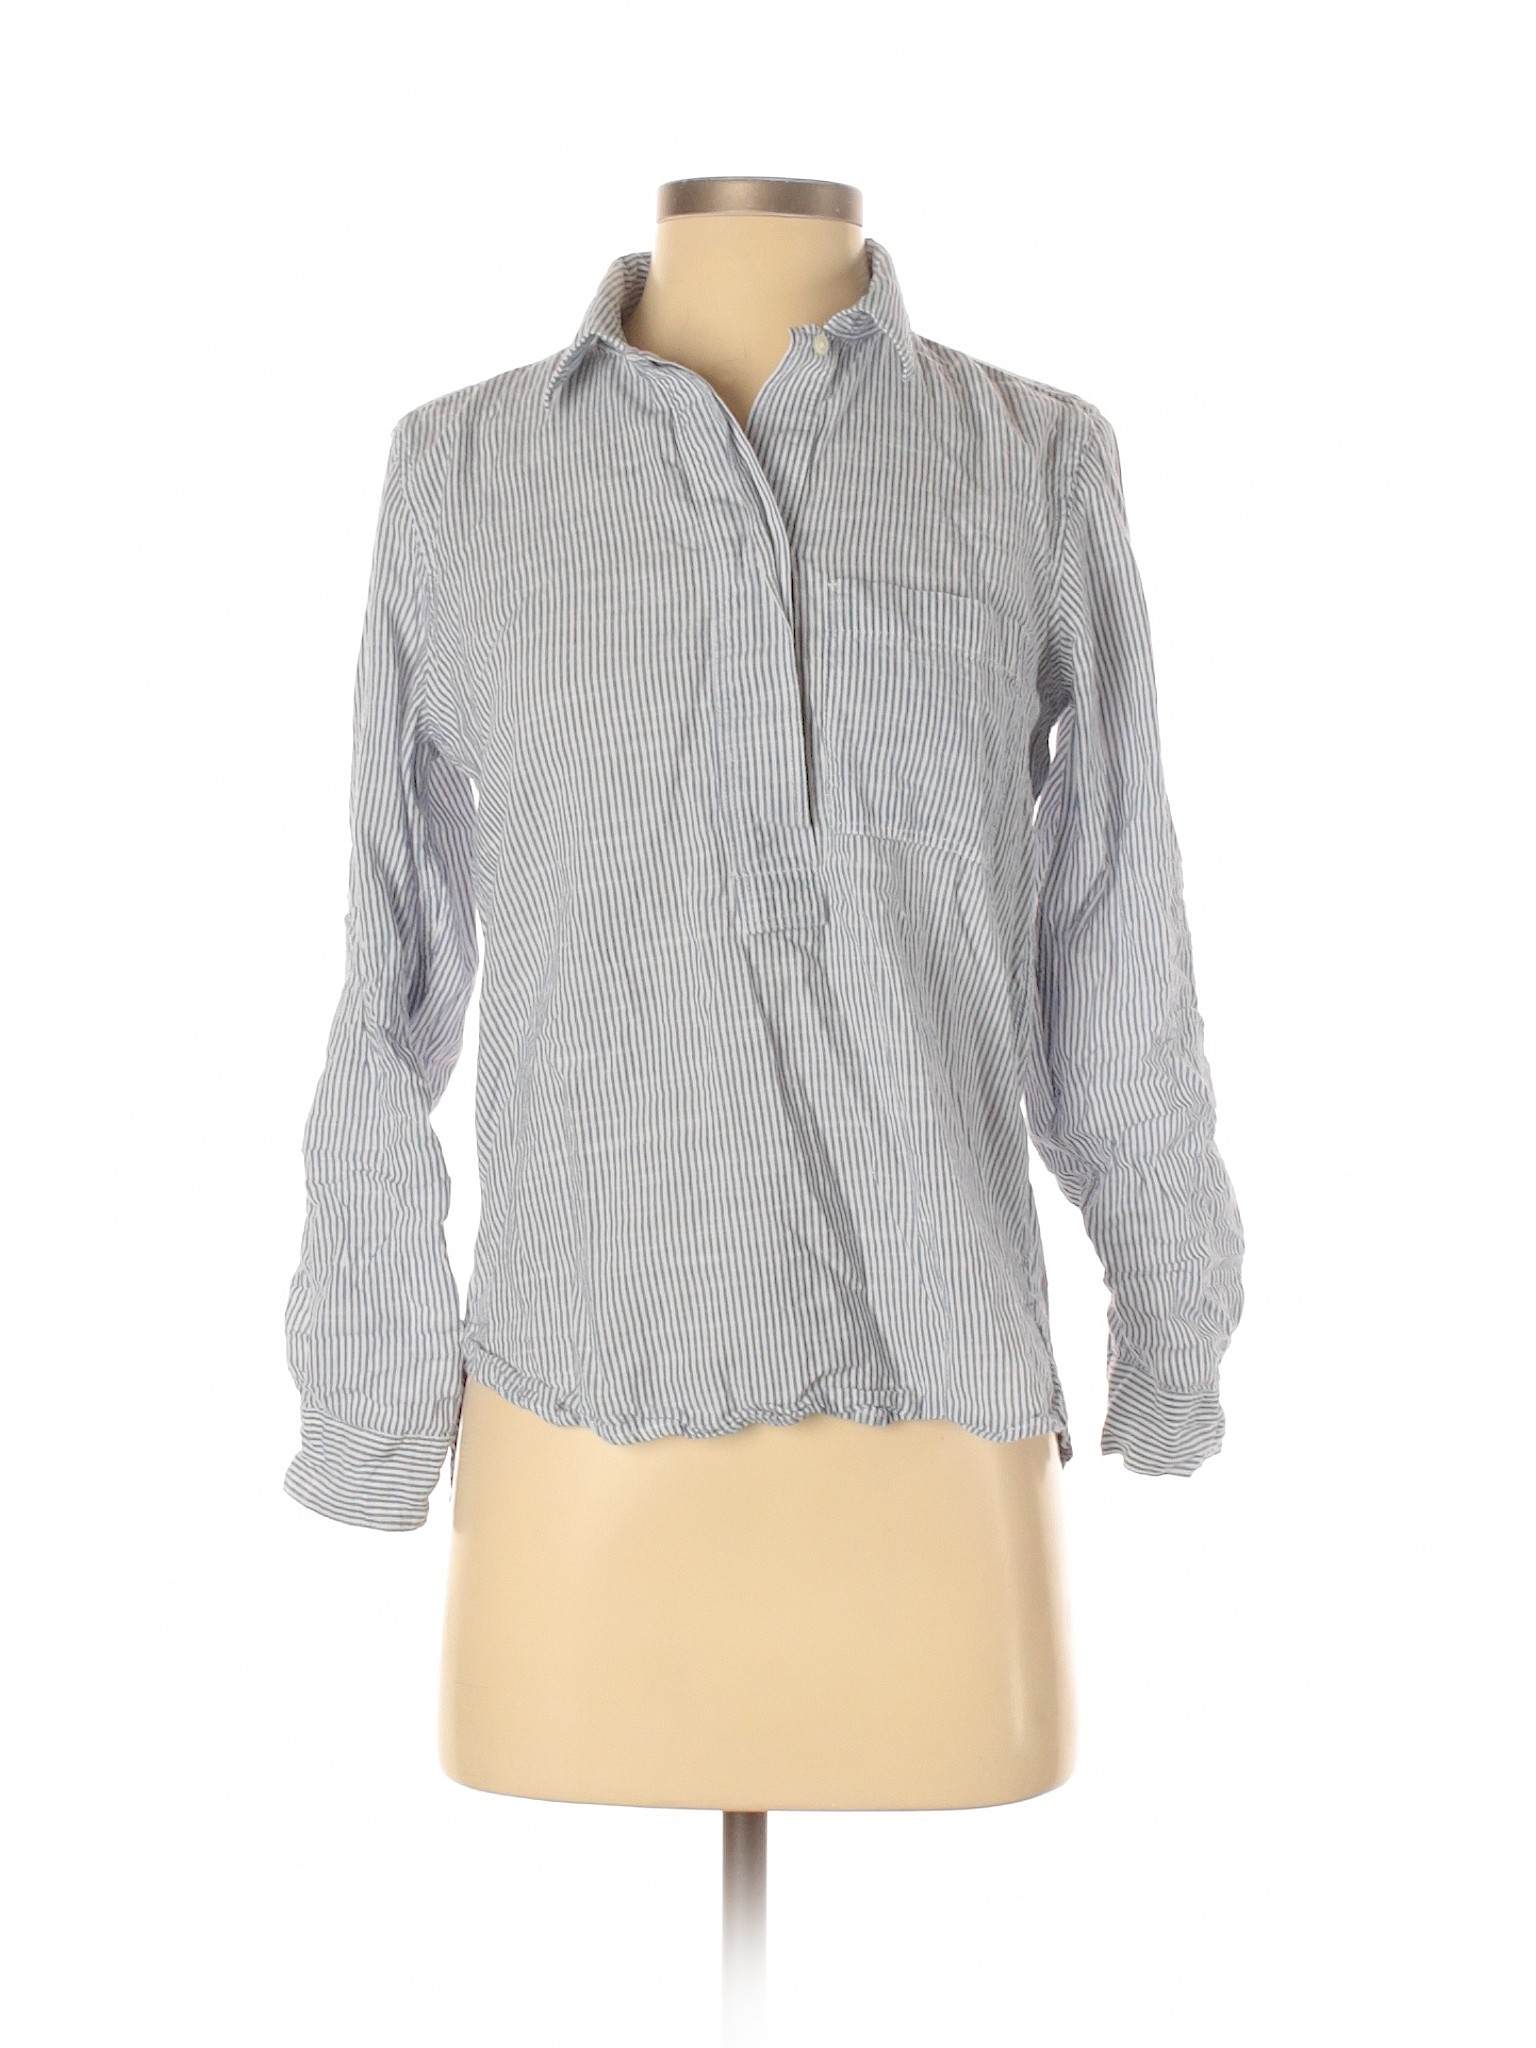 Gap Women Gray Long Sleeve Button-Down Shirt XS | eBay